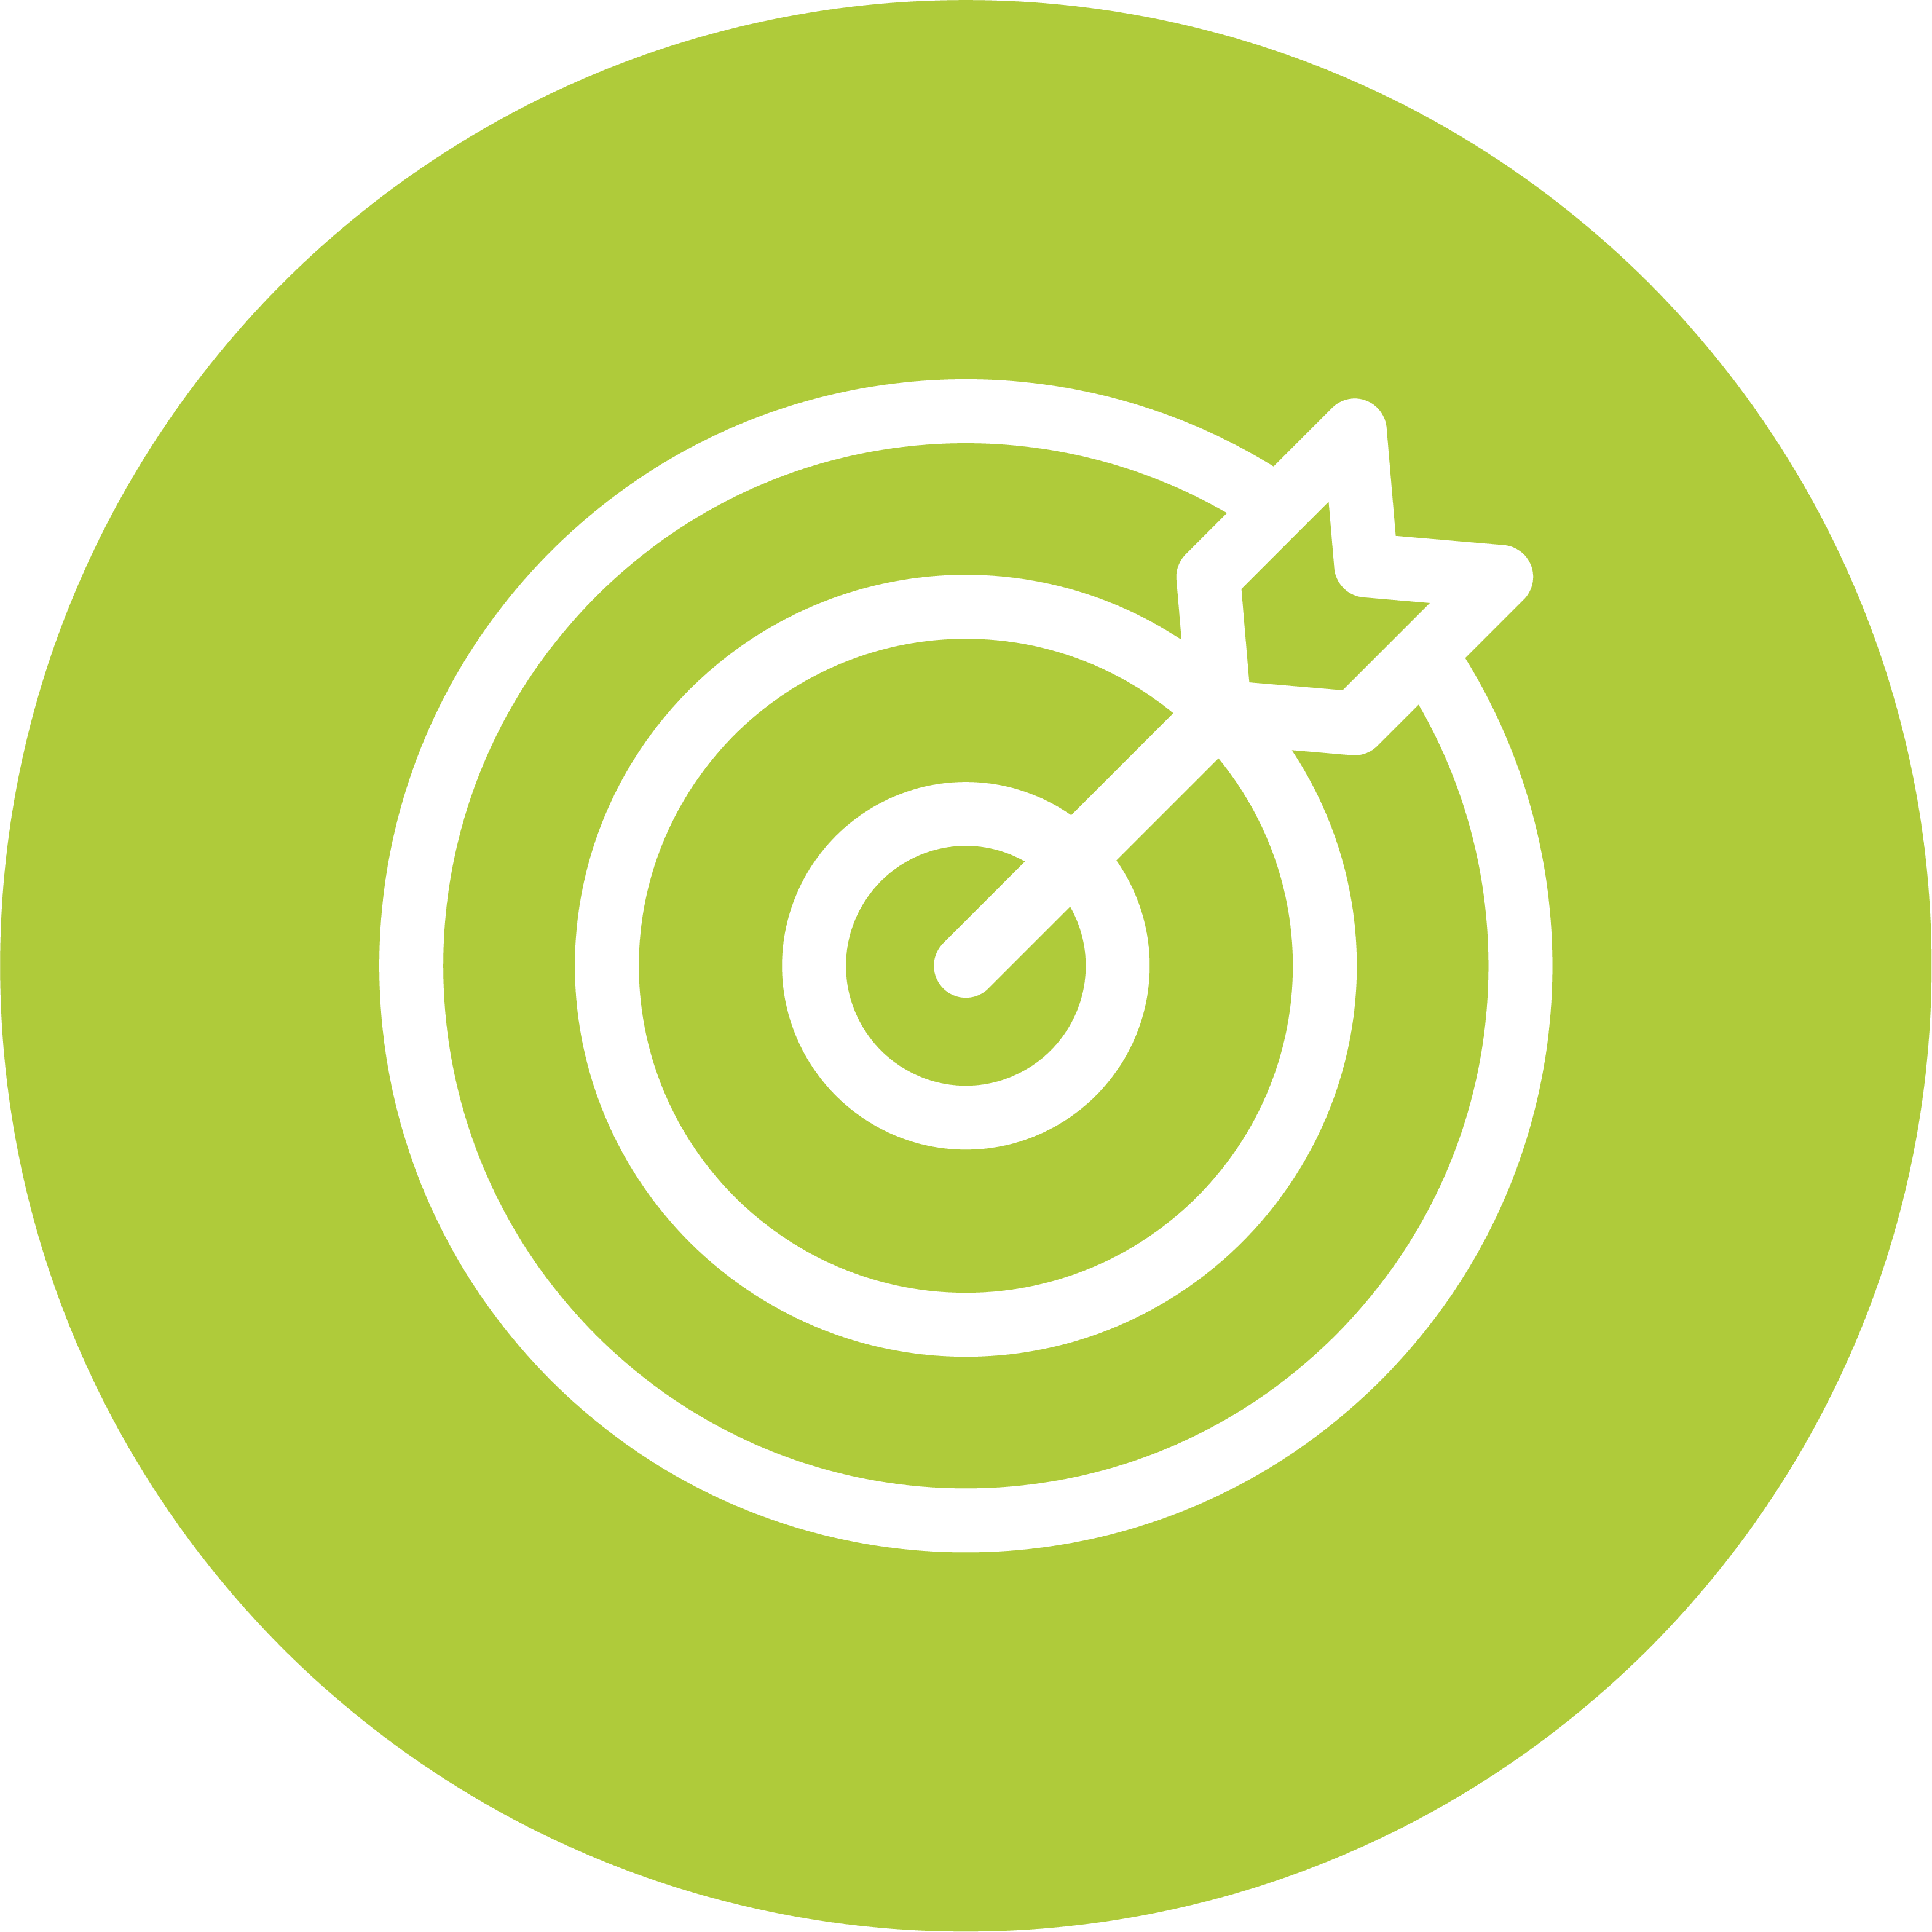 Grüner Kreis mit weißer Zielscheibe und Pfeil in der Mitte auf transparentem Hintergrund